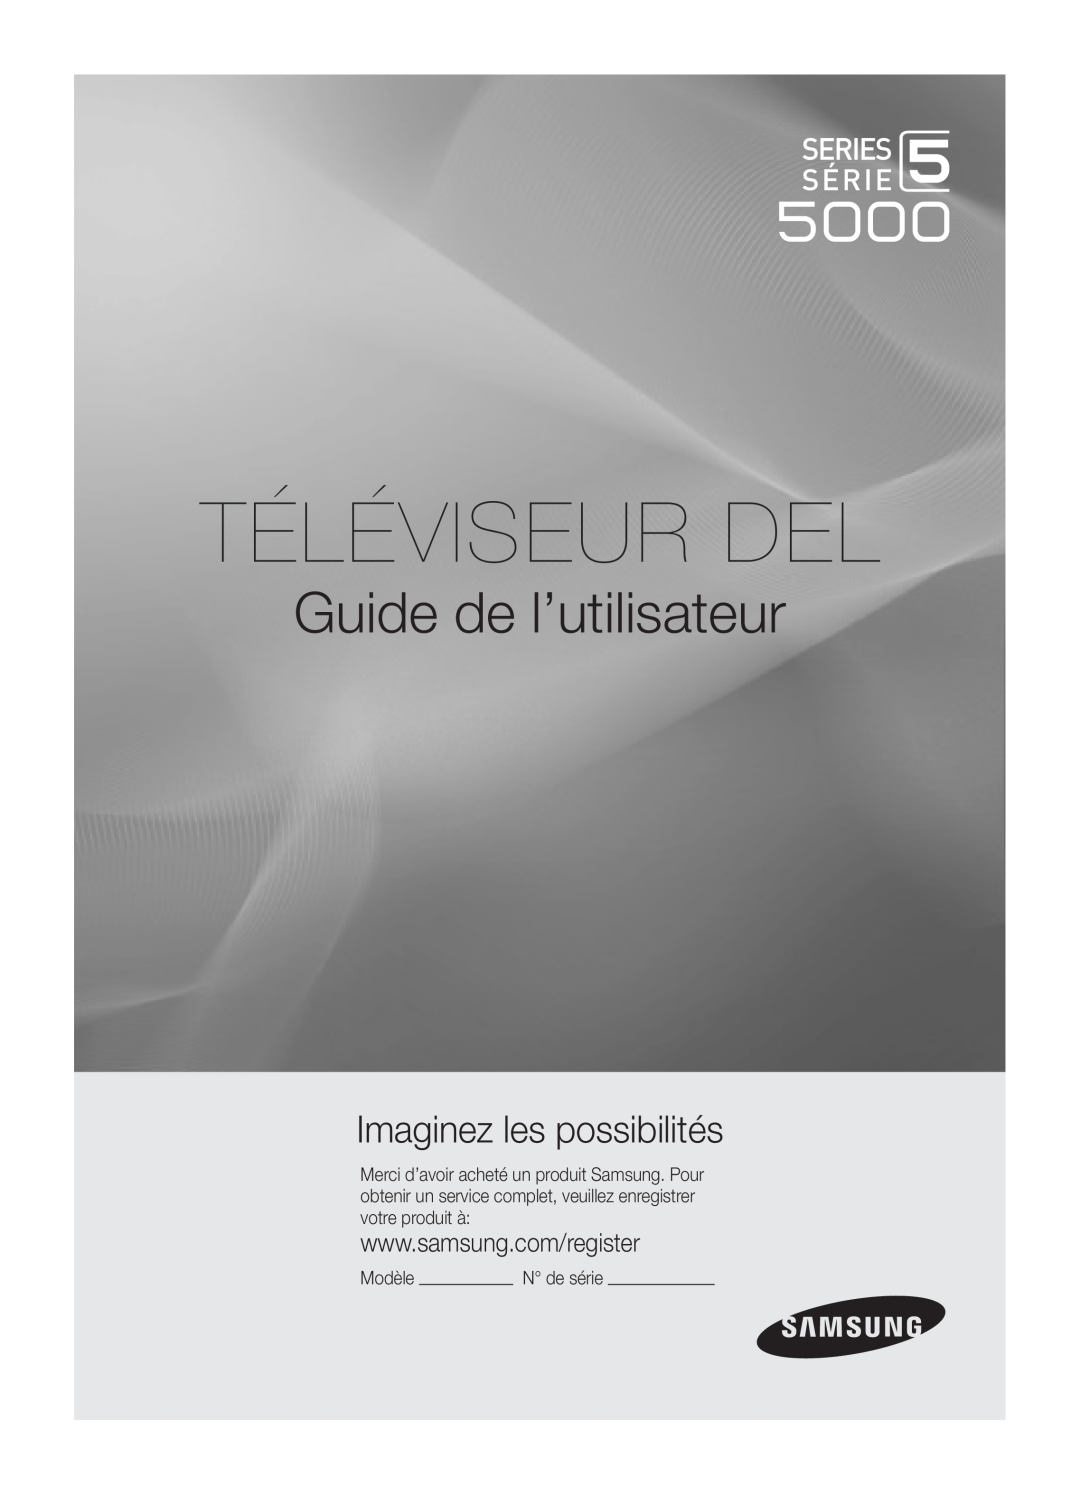 Samsung UC5000-ZC, BN68-03004B-02 user manual Téléviseur Del, Guide de l’utilisateur, Imaginez les possibilités 